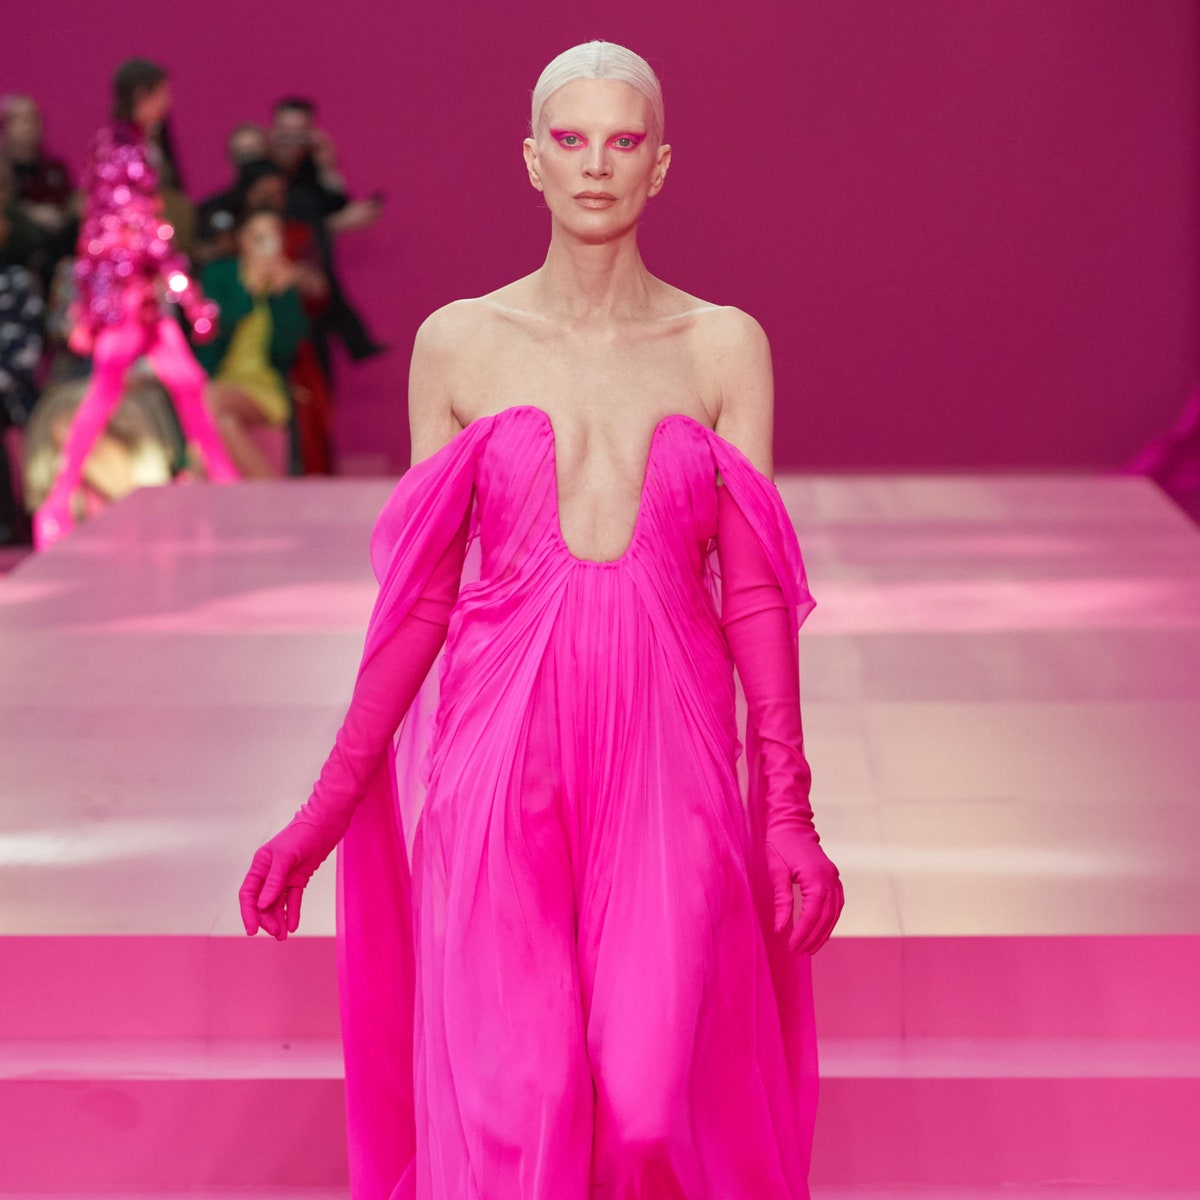 Розовый &- цвет любви и свободы, настаивает Пьерпаоло Пиччоли. 30 вещей в палитре новой коллекции Valentino